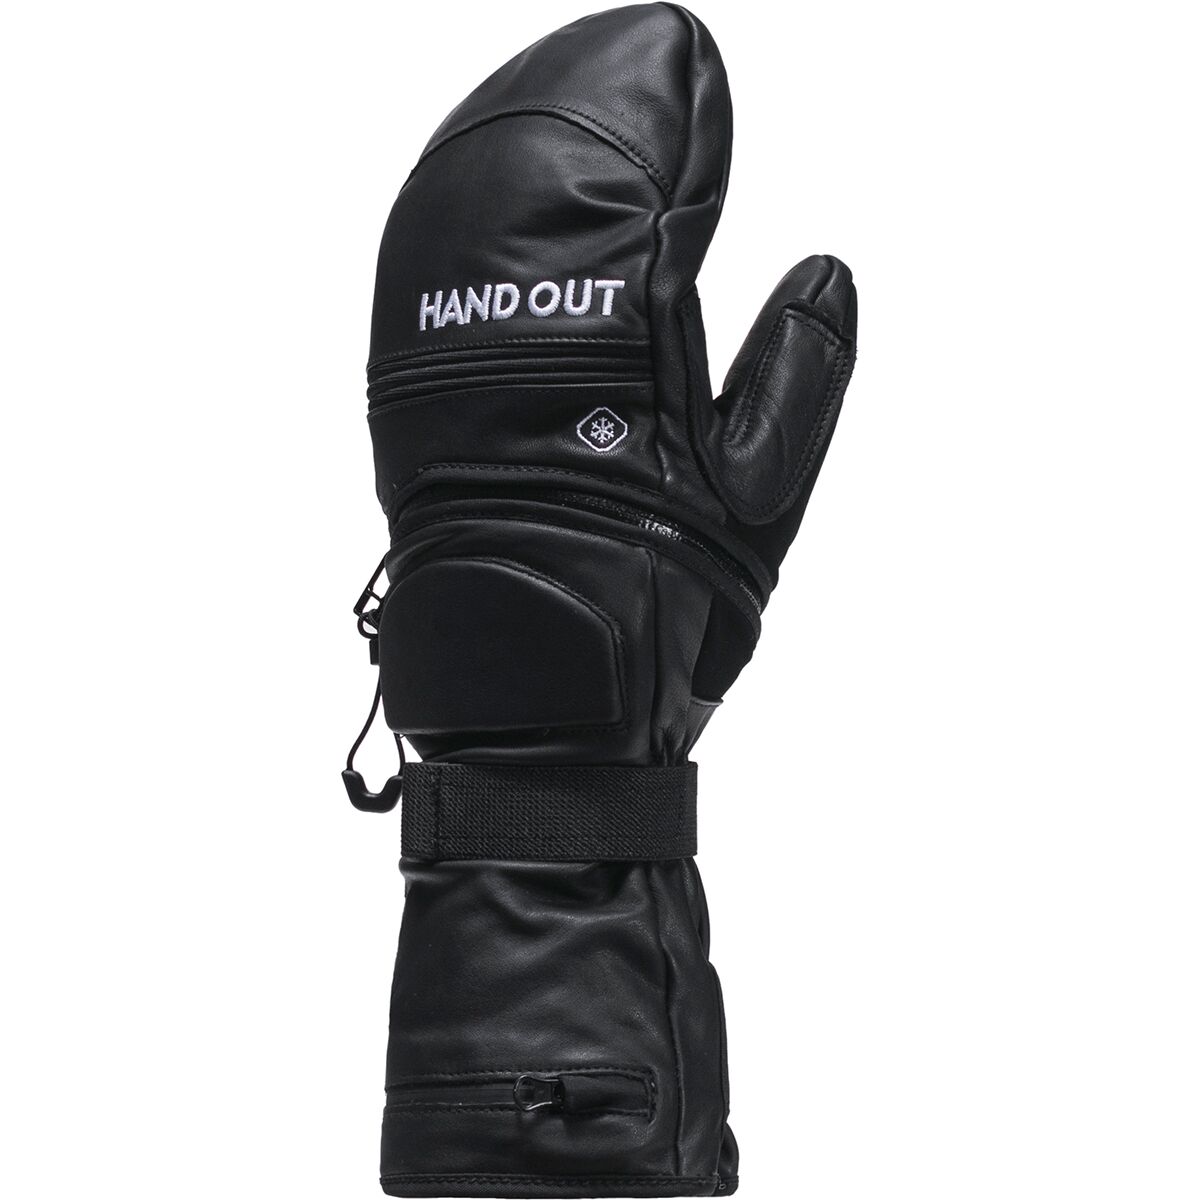 Hand Out Gloves Pro Ski Mitten - Men's Black/Grey